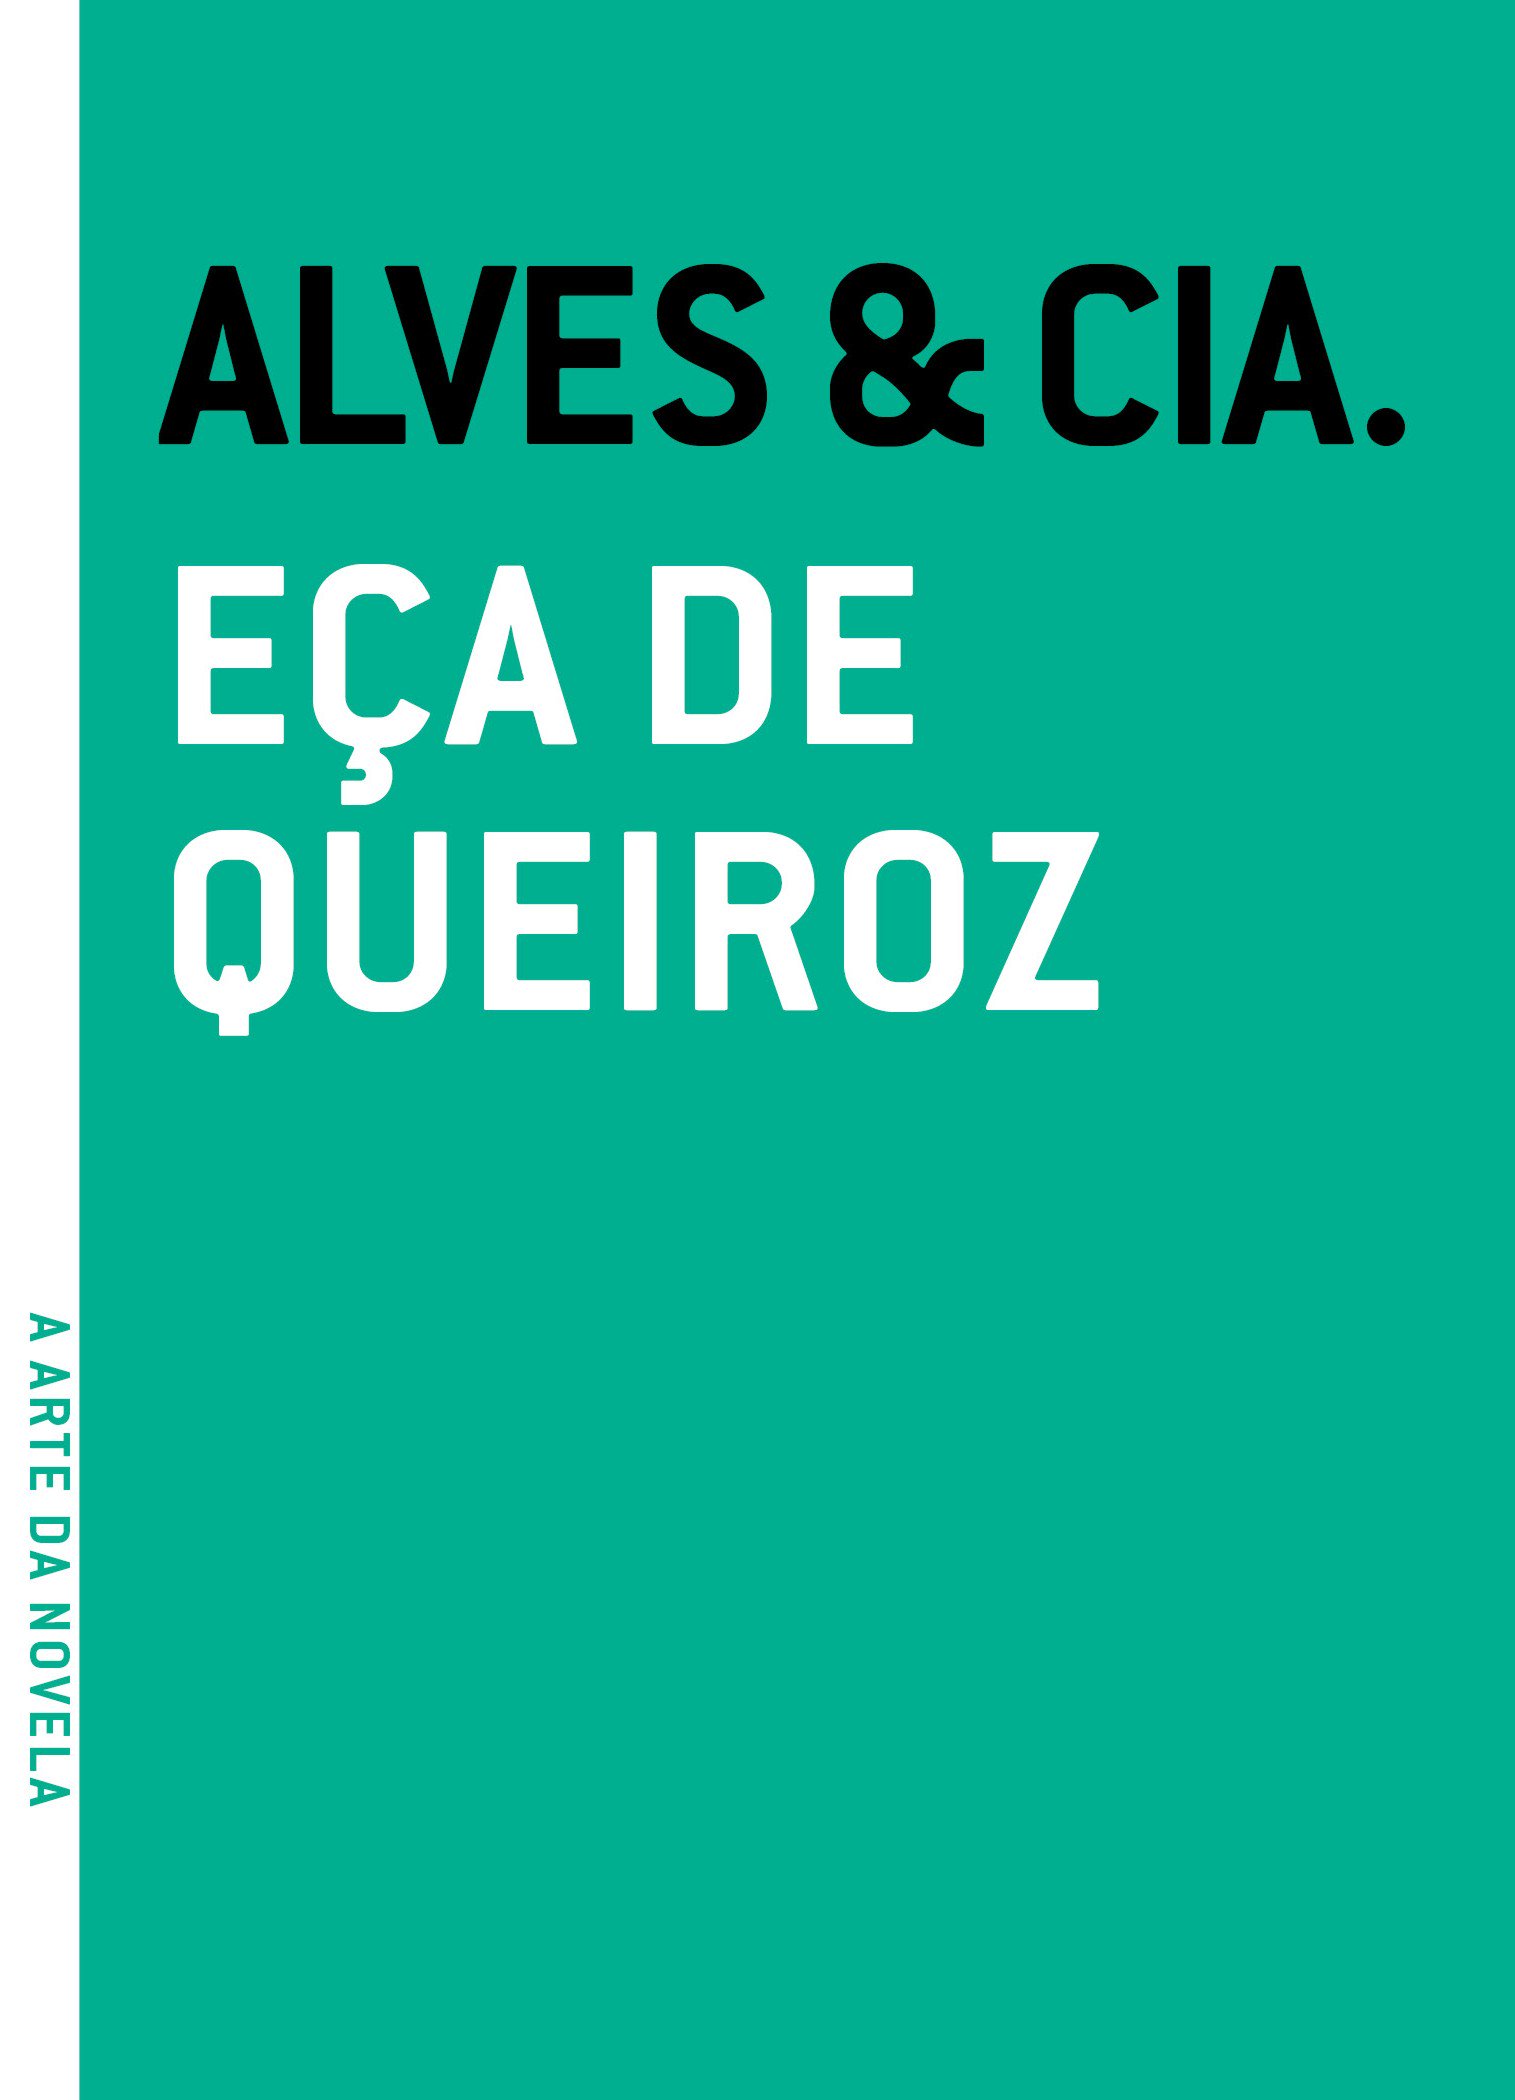 Alves & Cia, livro de 